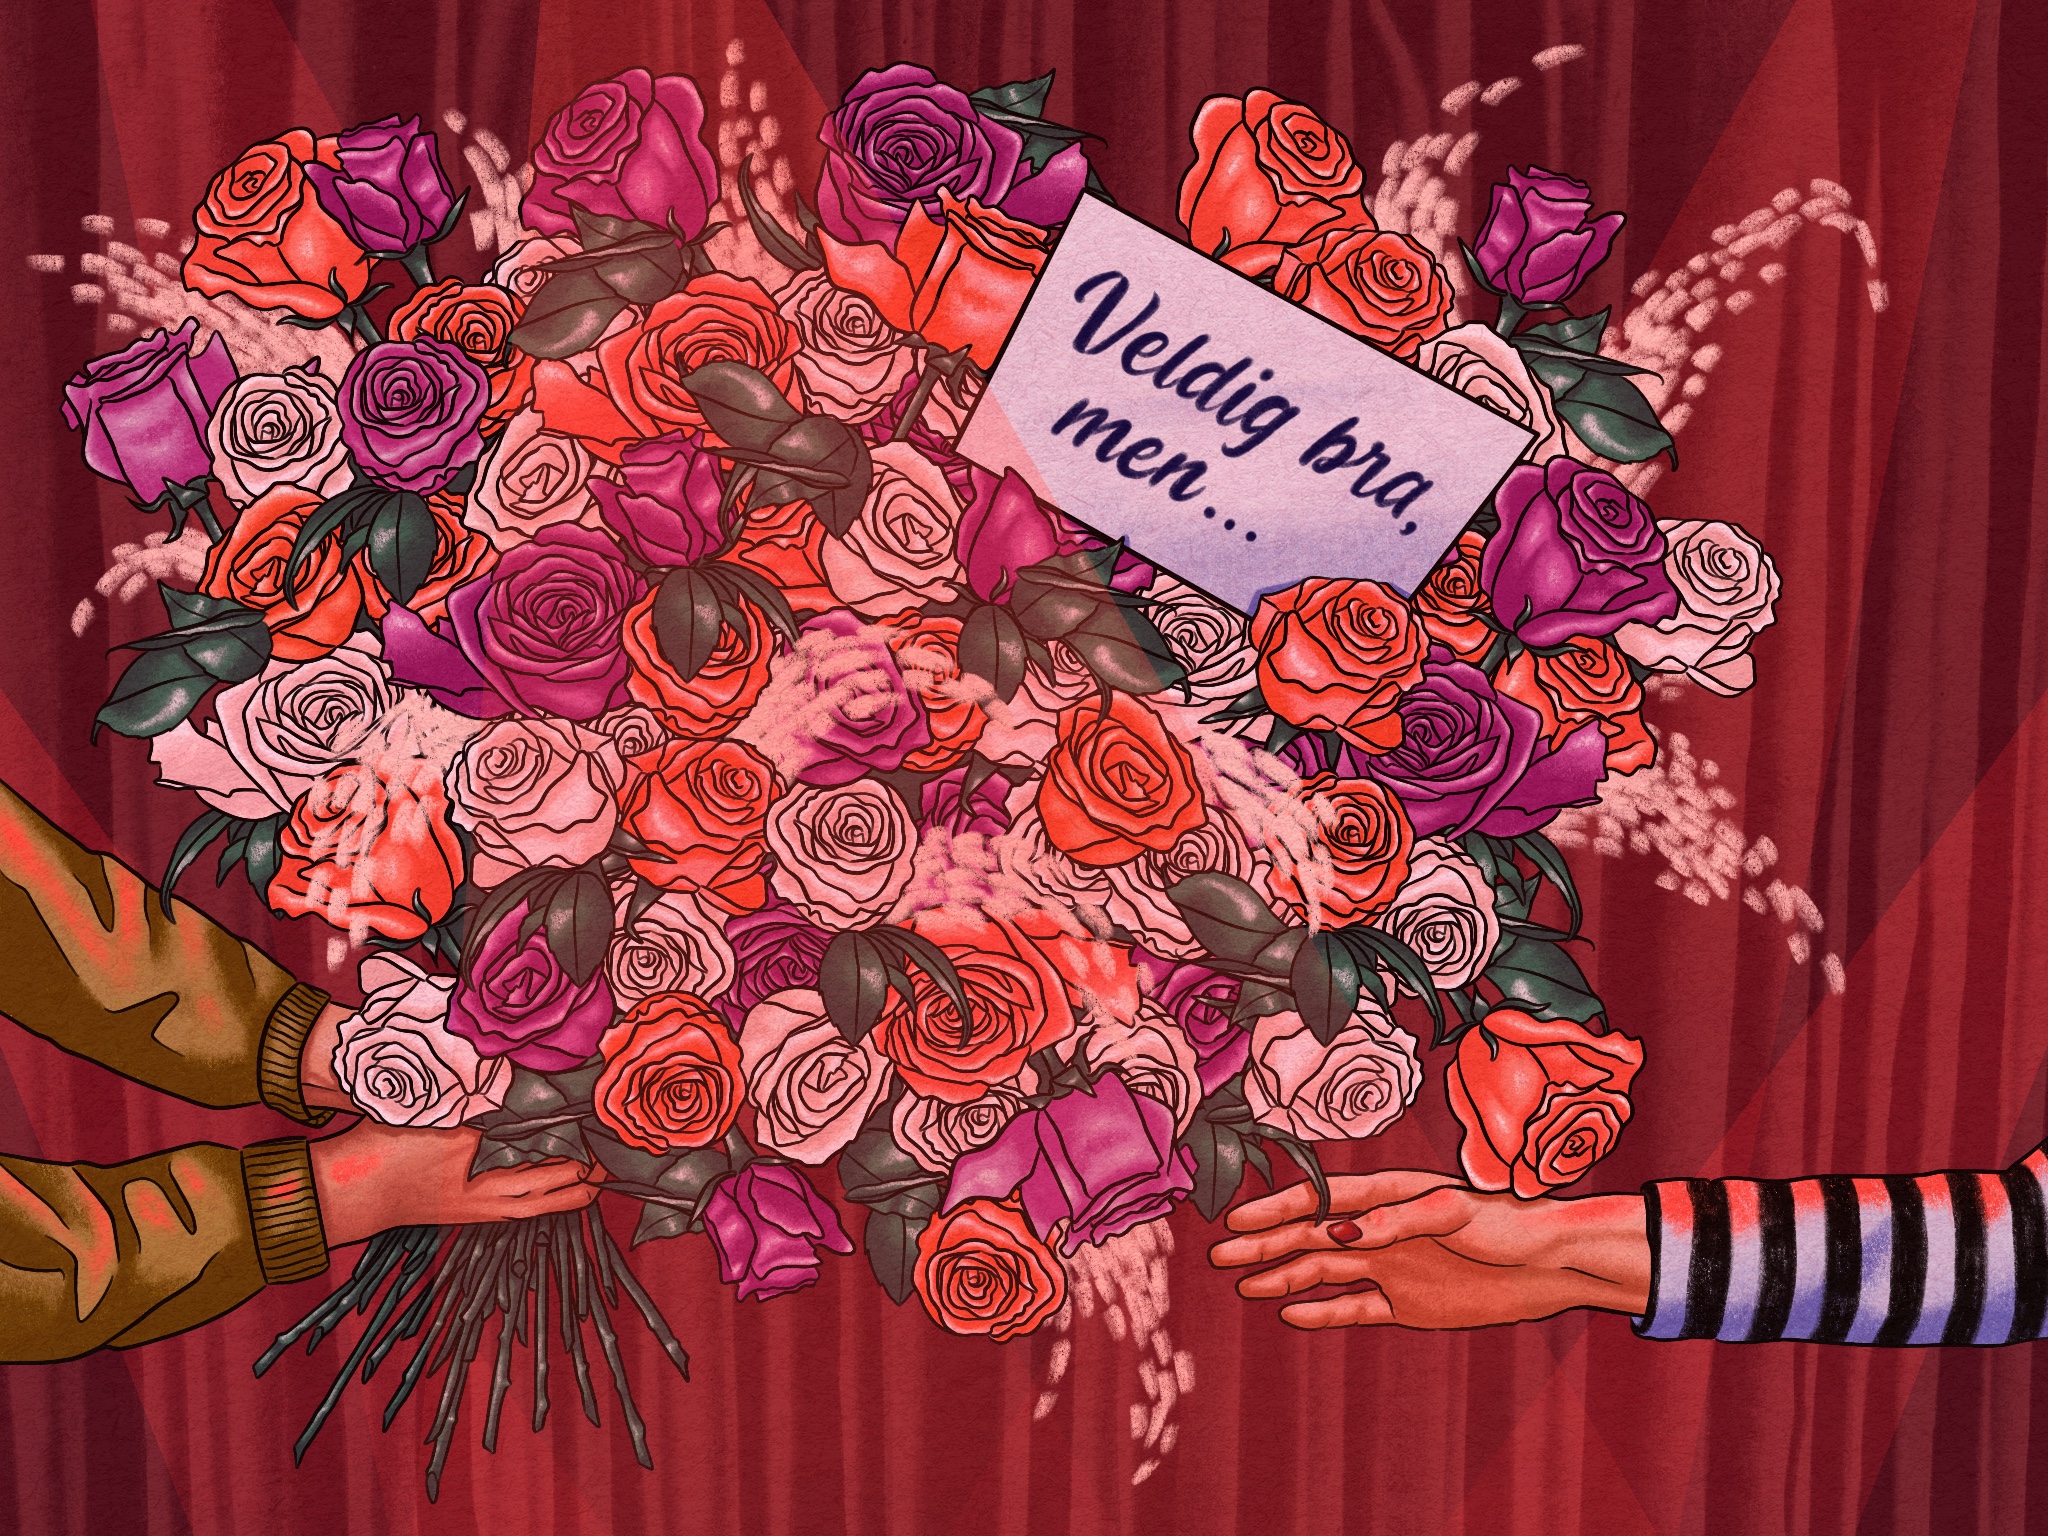 Illustrasjon av enorm bukett med blomster og kort med kritikk